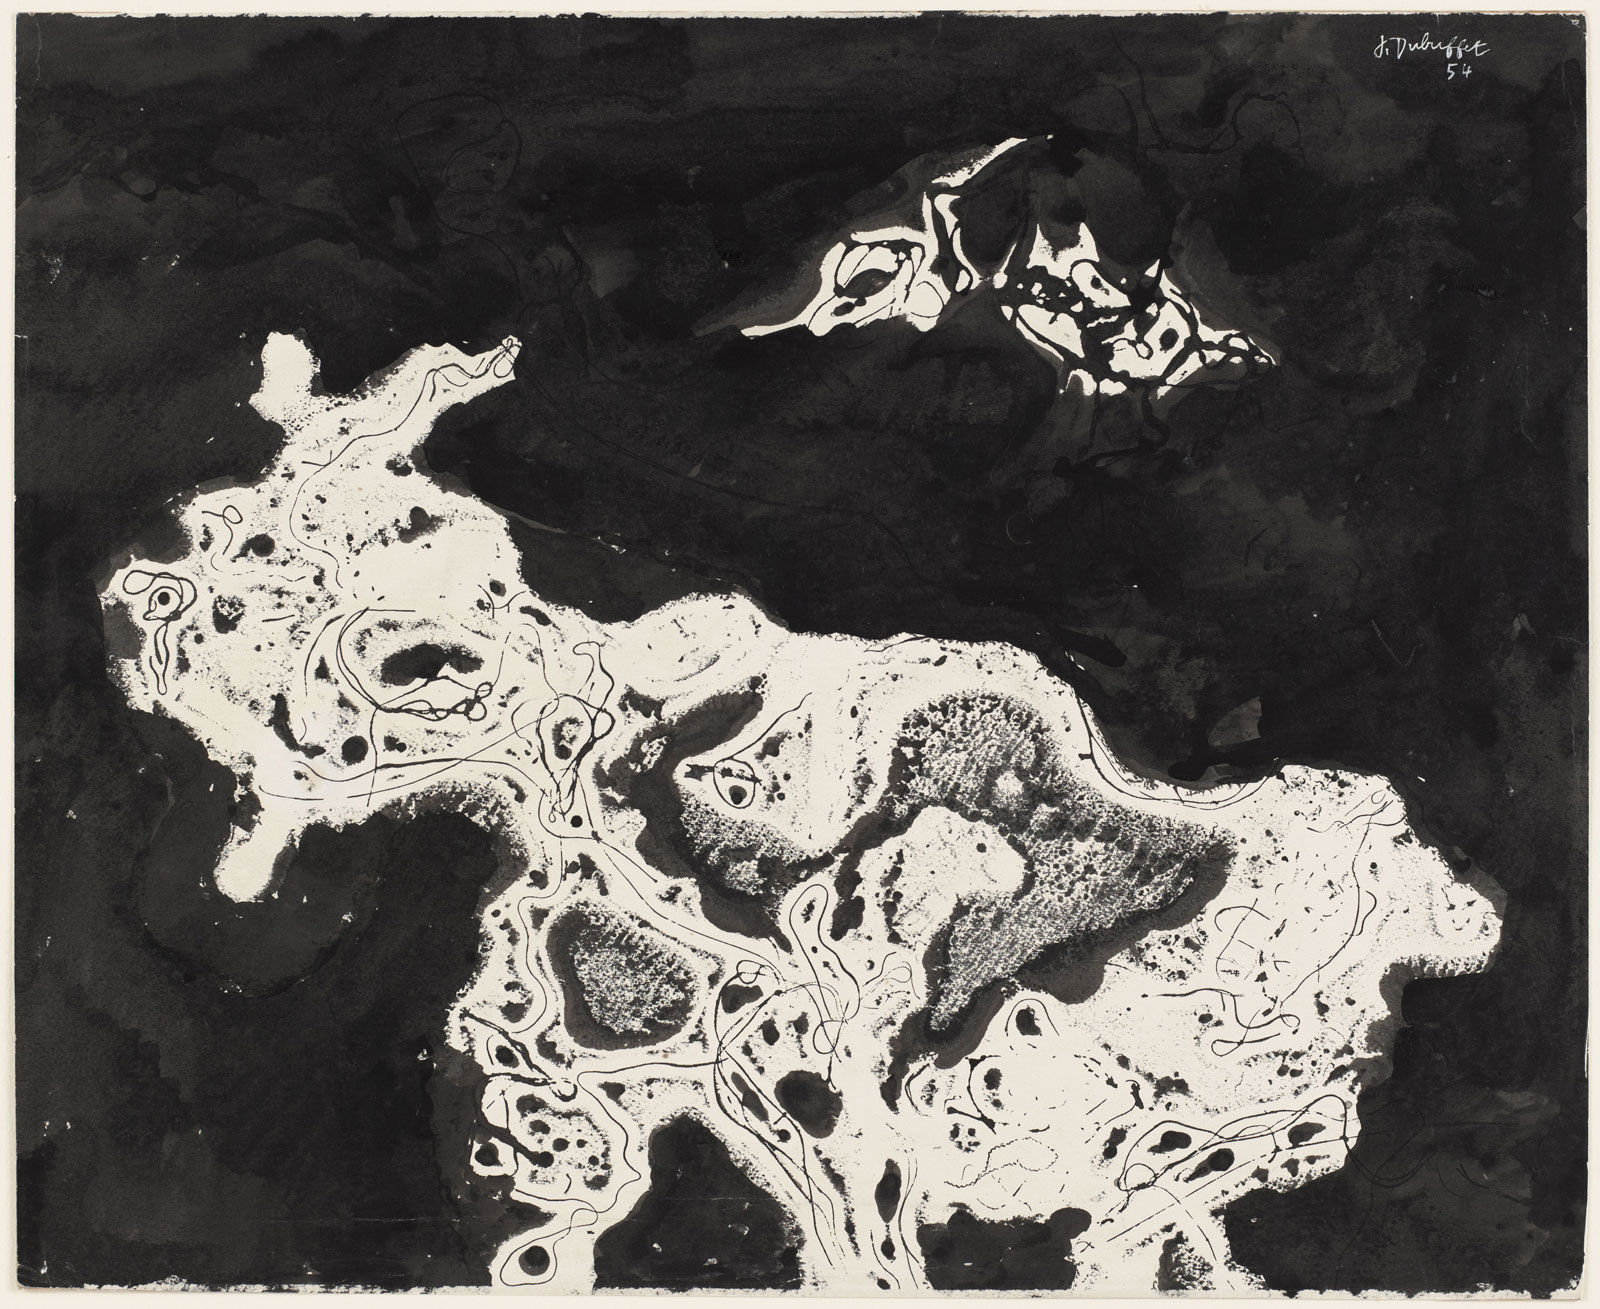 Jean Dubuffet: Goat with a Bird, 1954